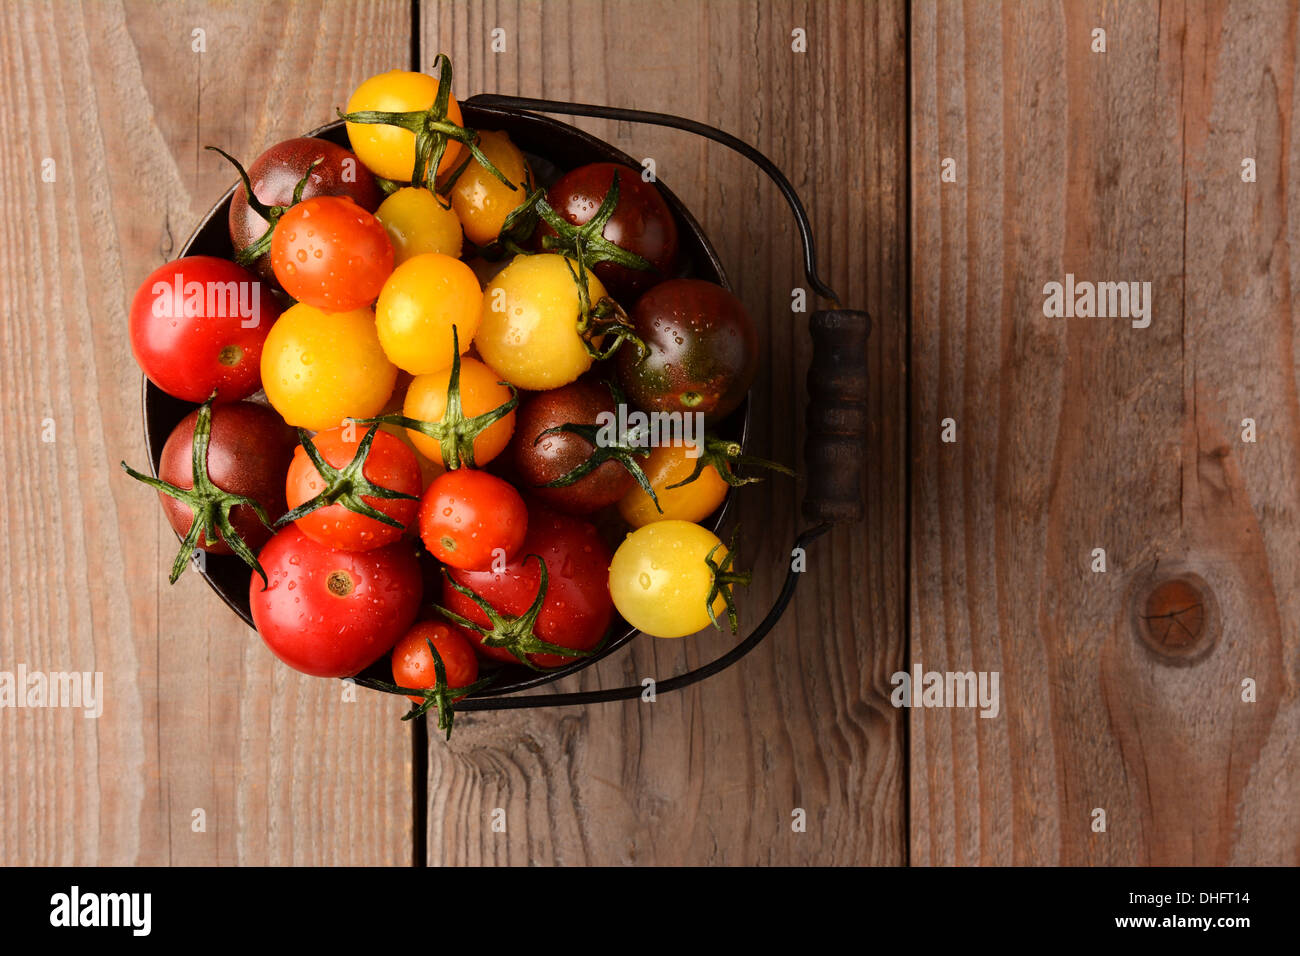 Baby Heirloom Tomatoes in einem Eimer auf einem rustikalen Holztisch. Querformat, schaut auf den Eimer. Stockfoto